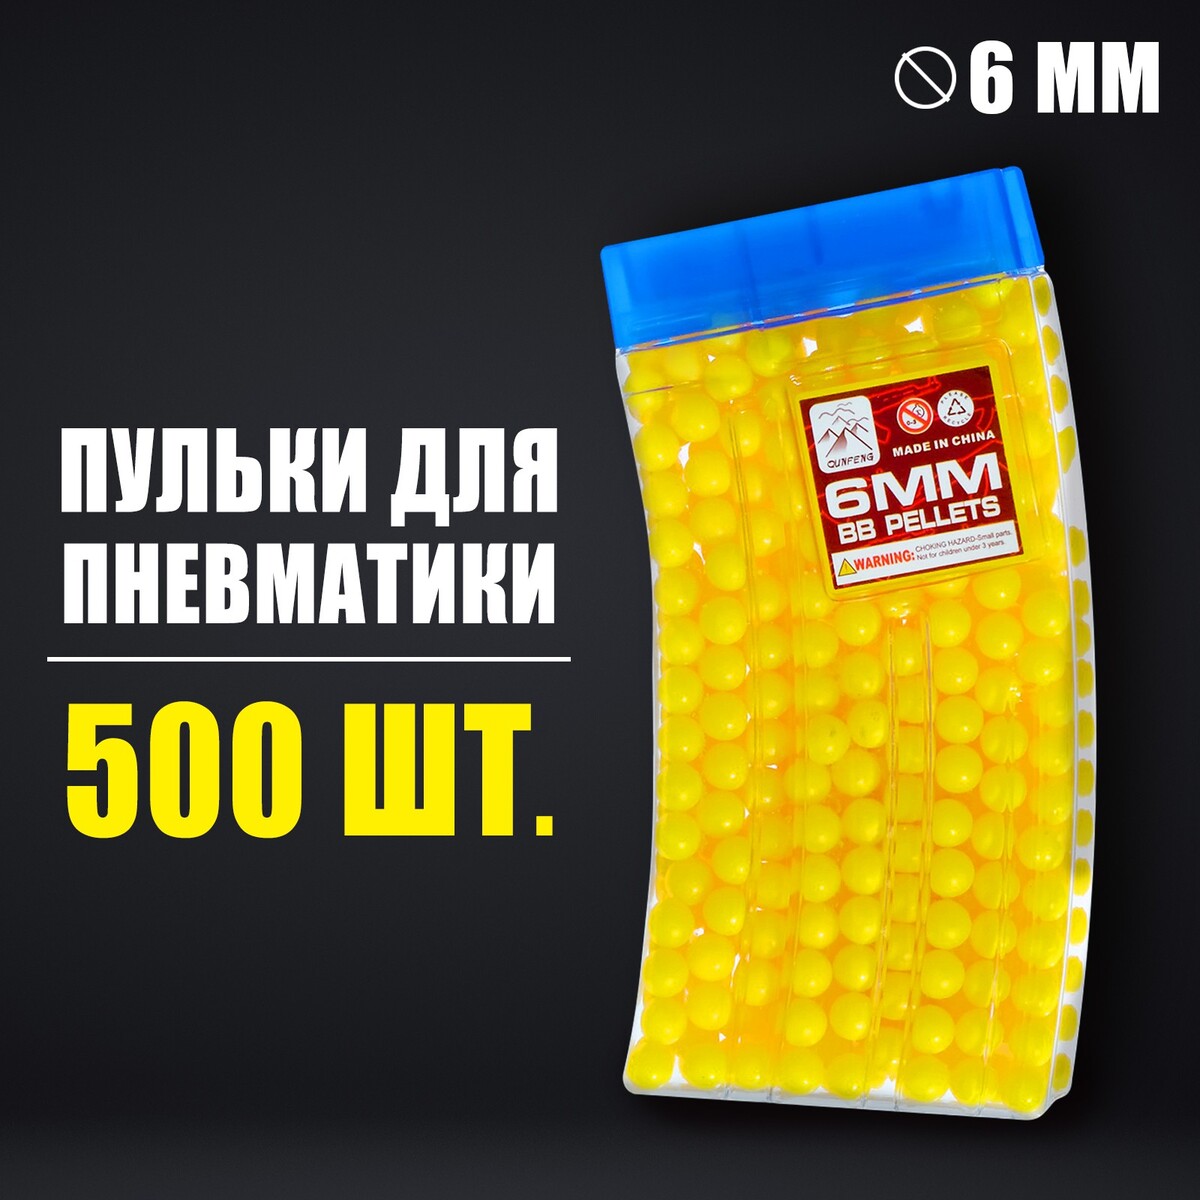 Пульки 6 мм в рожке, 500 шт., цвет желтый пульки 6 мм желтый в пакете 2000 шт